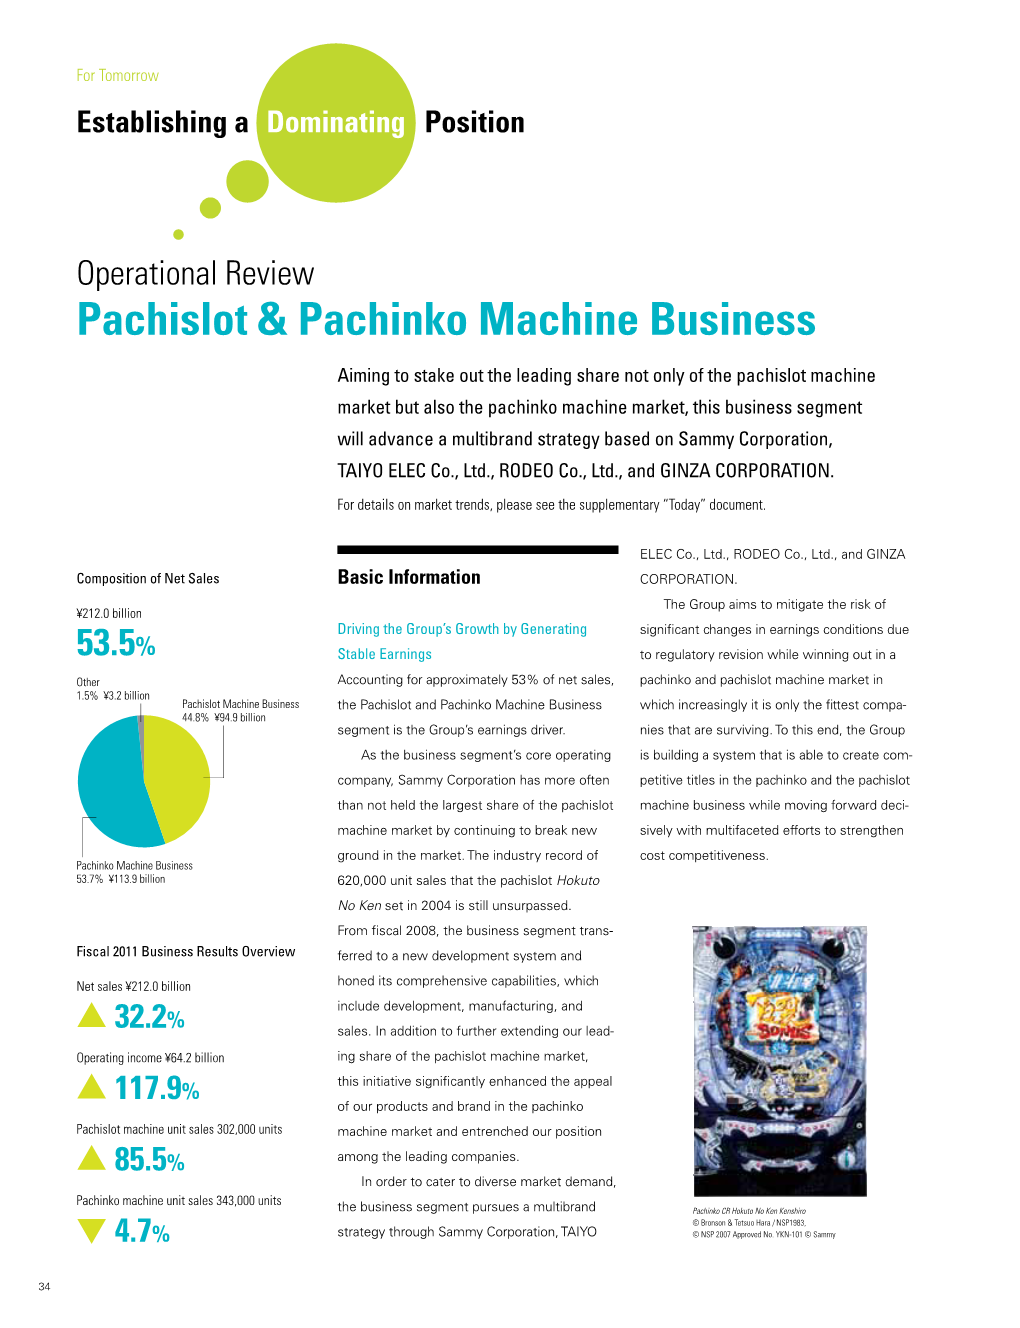 Pachislot & Pachinko Machine Business